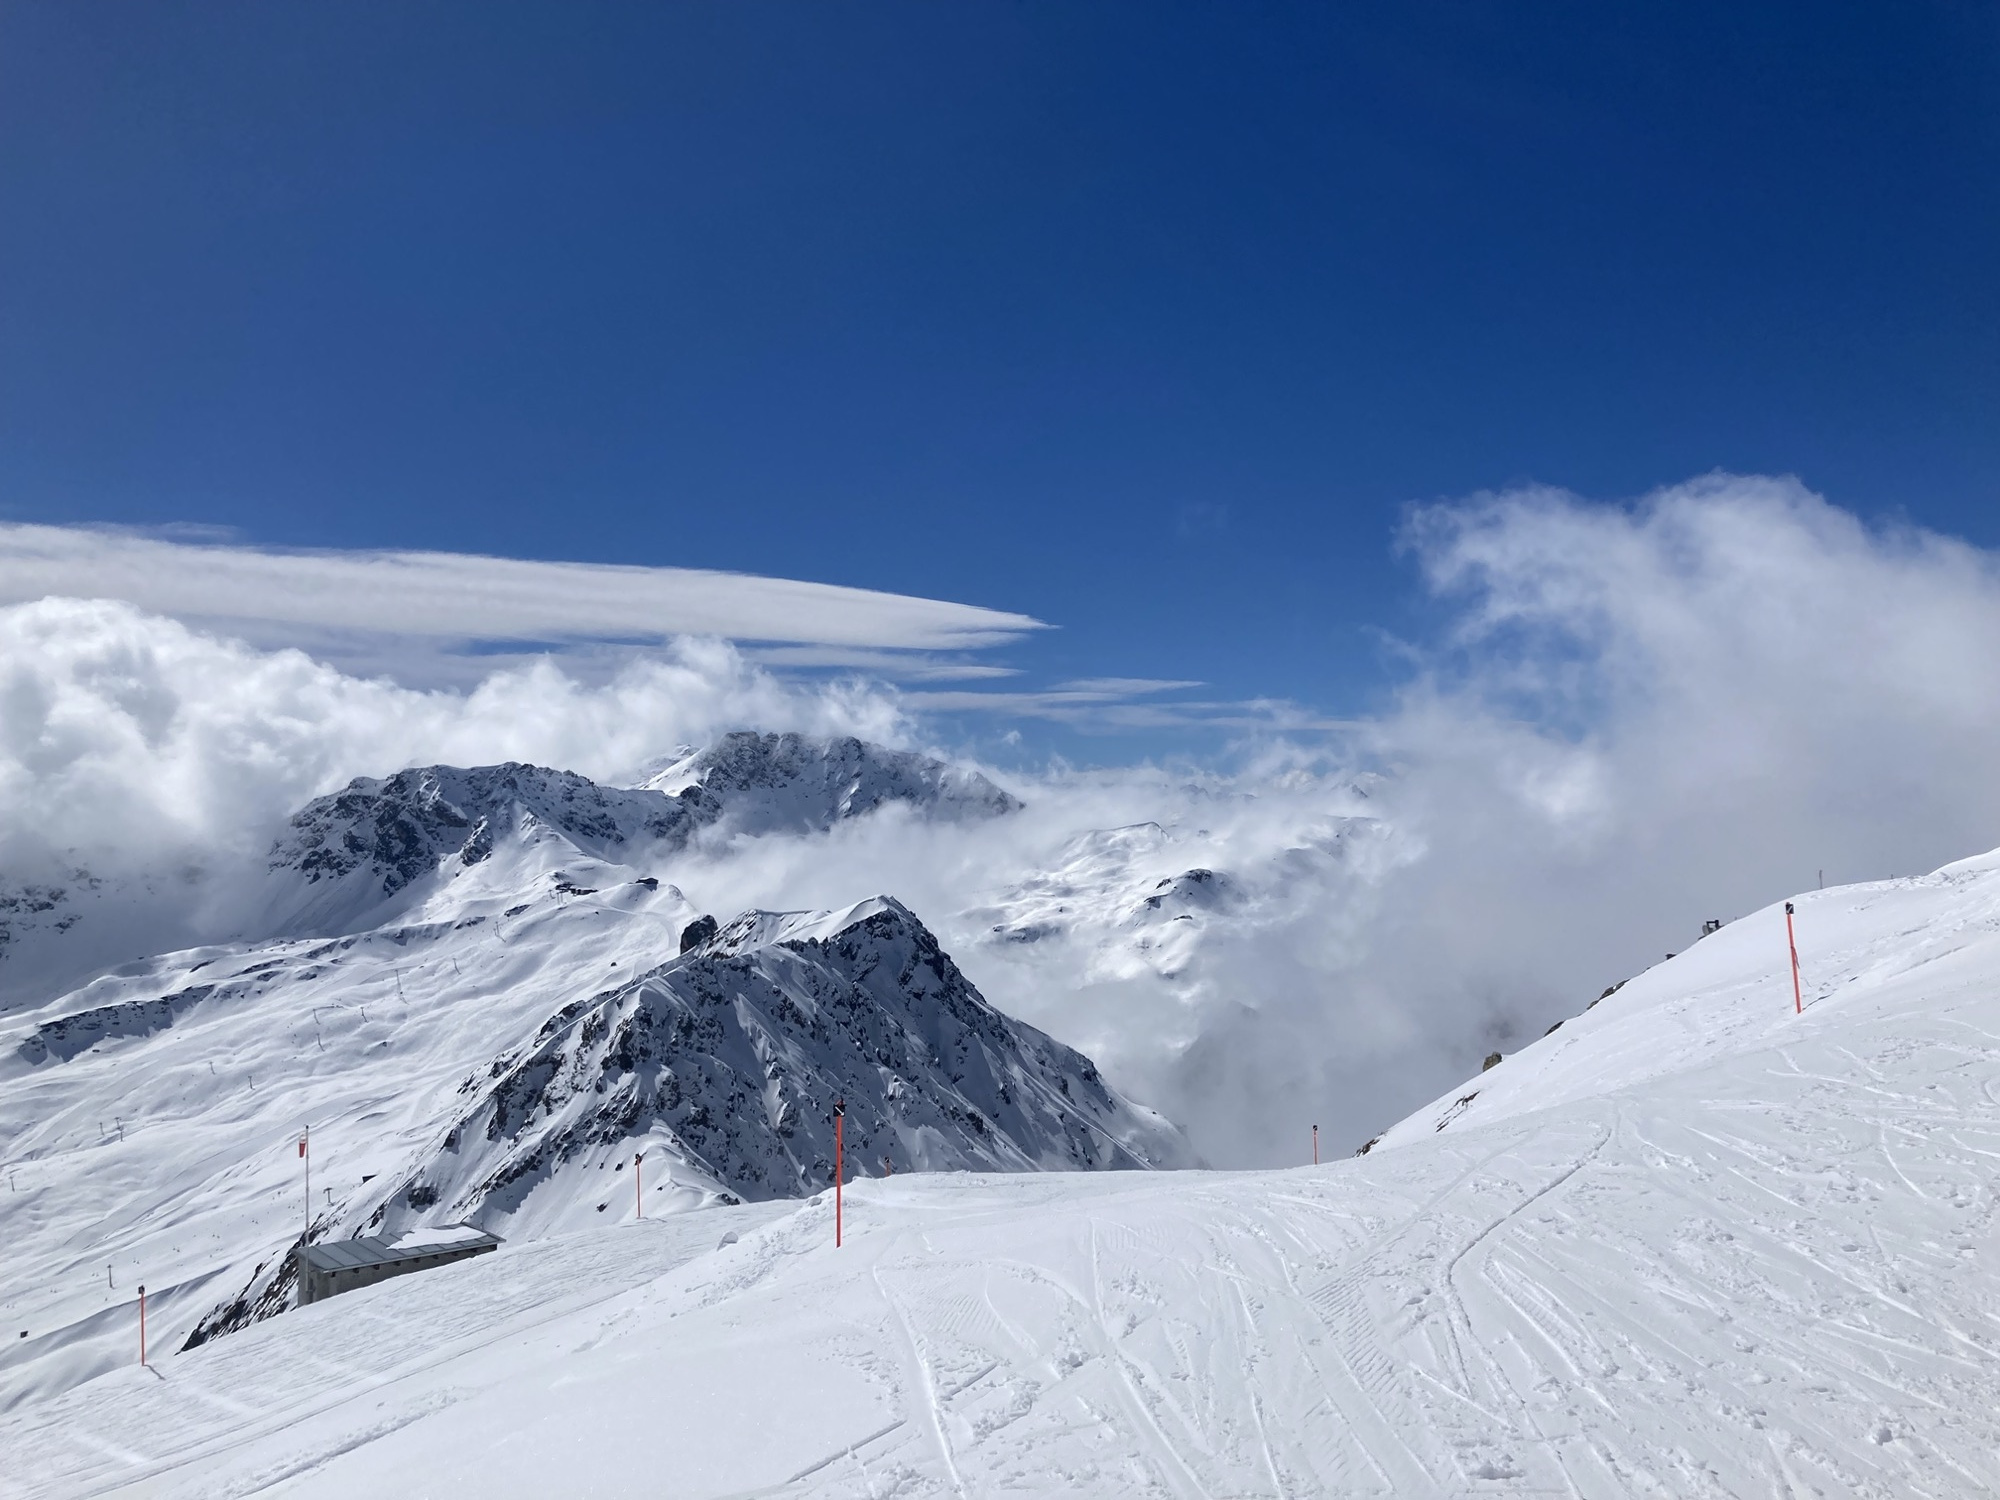 Postkarten-taugliches Bergpanorama, von Wolken umschmeichelte Berggipfel ragen zwischen Skipisten in den tiefblauen Himmel